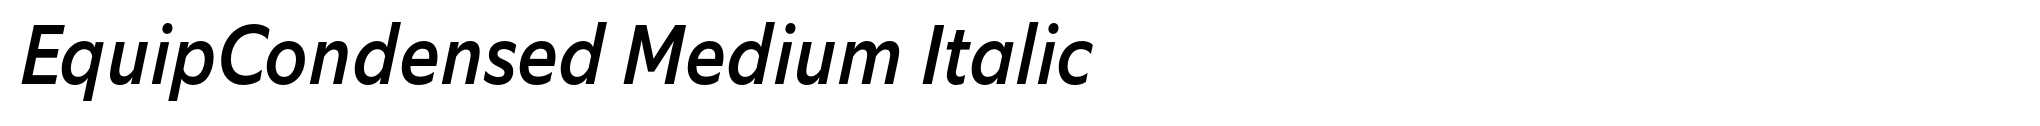 EquipCondensed Medium Italic image